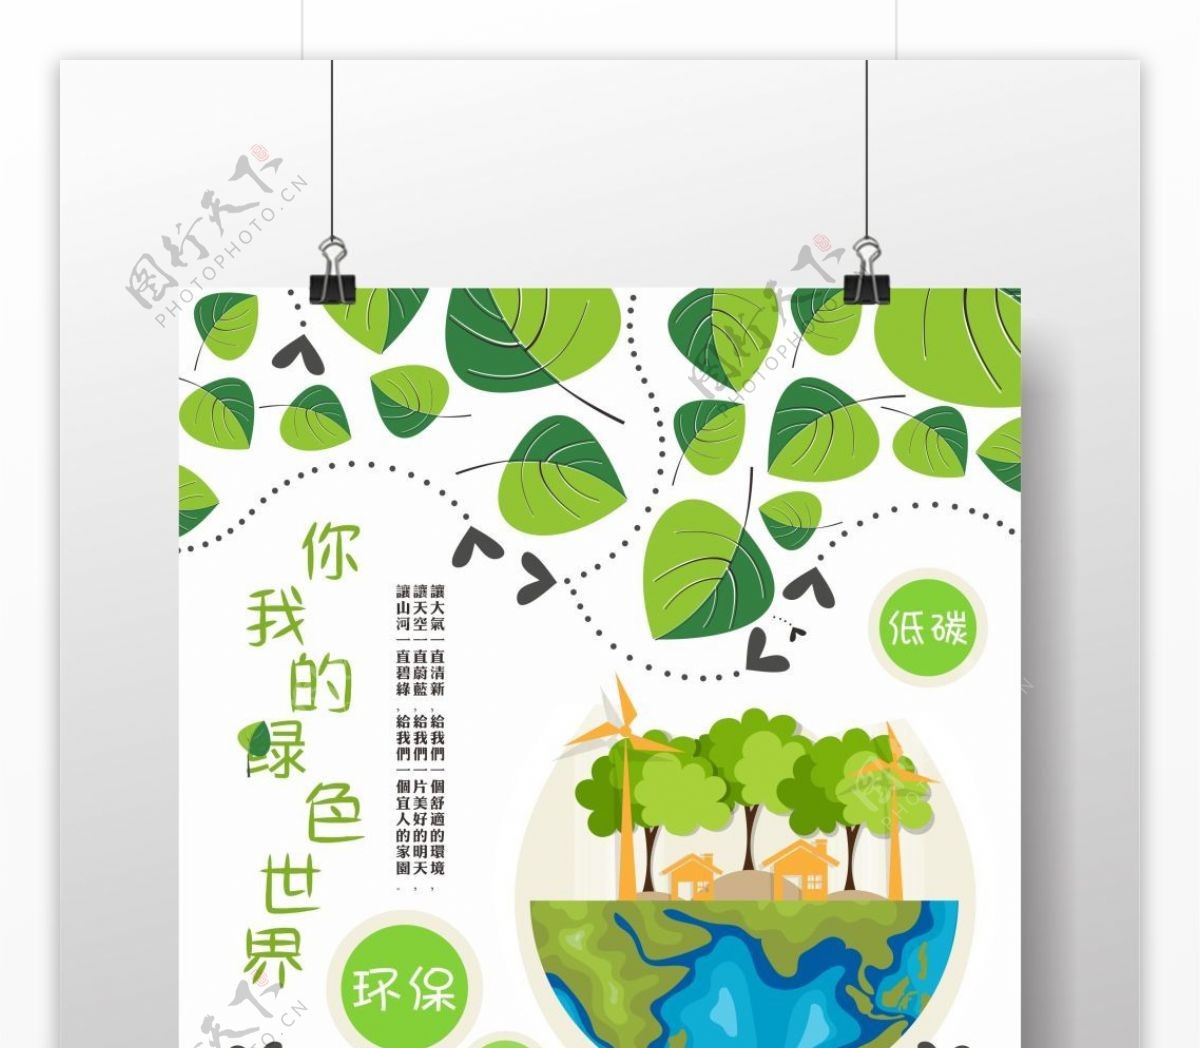 创意绿色环保生活公益海报